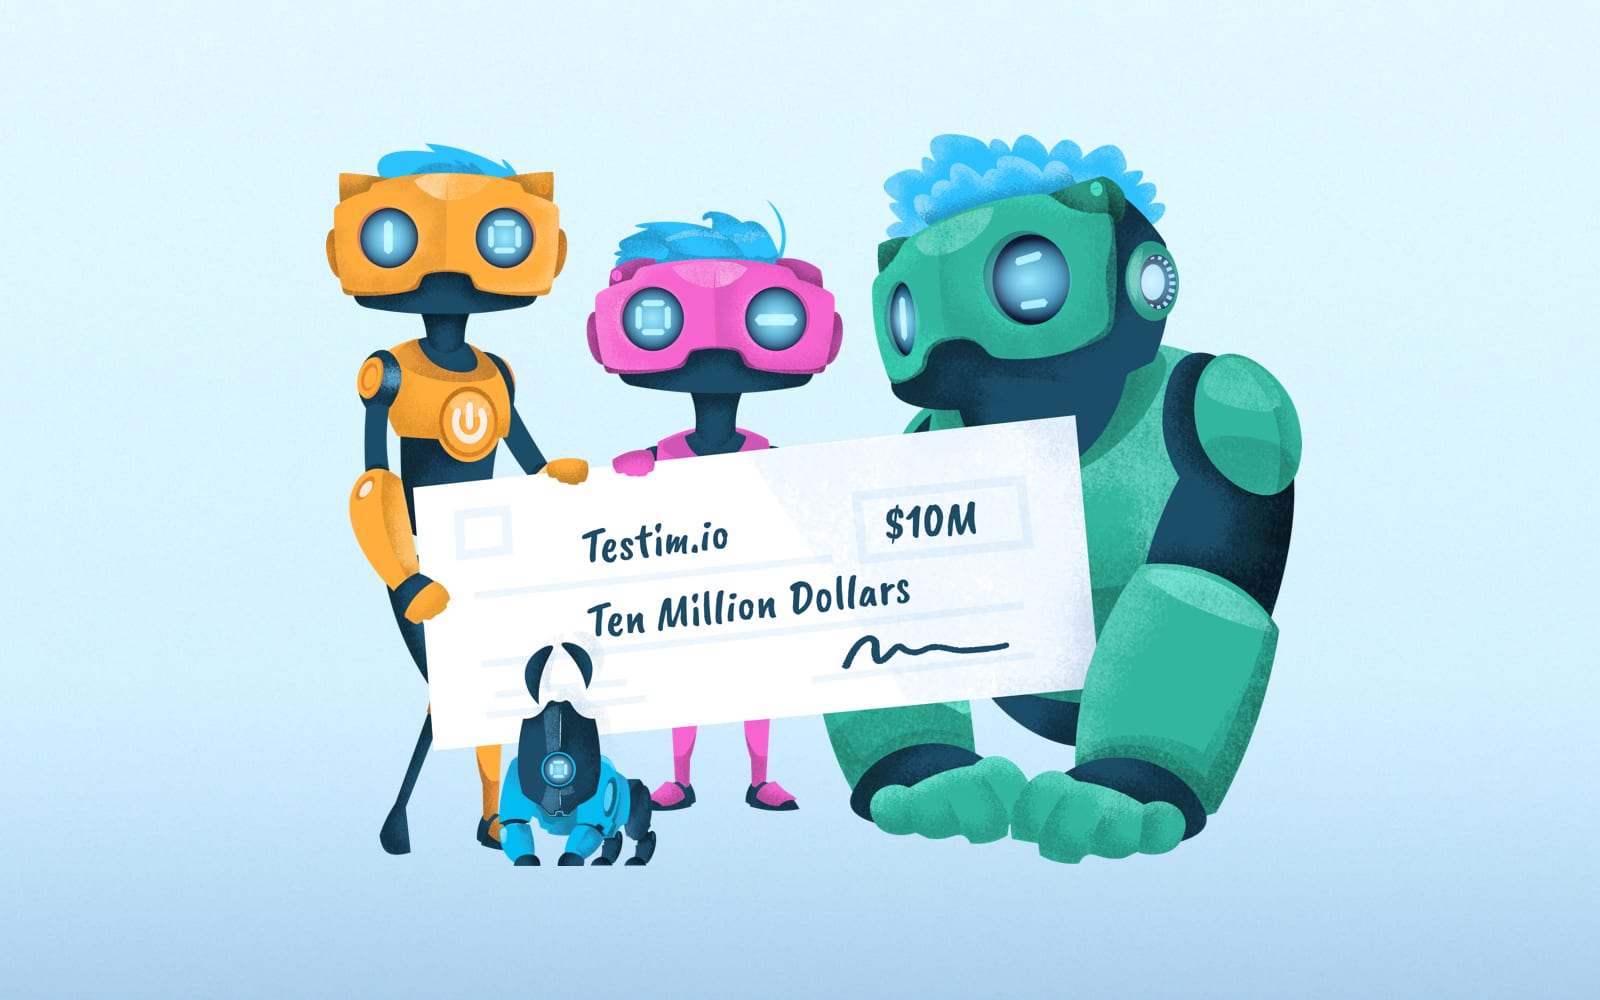 Testim Raises $10 Million